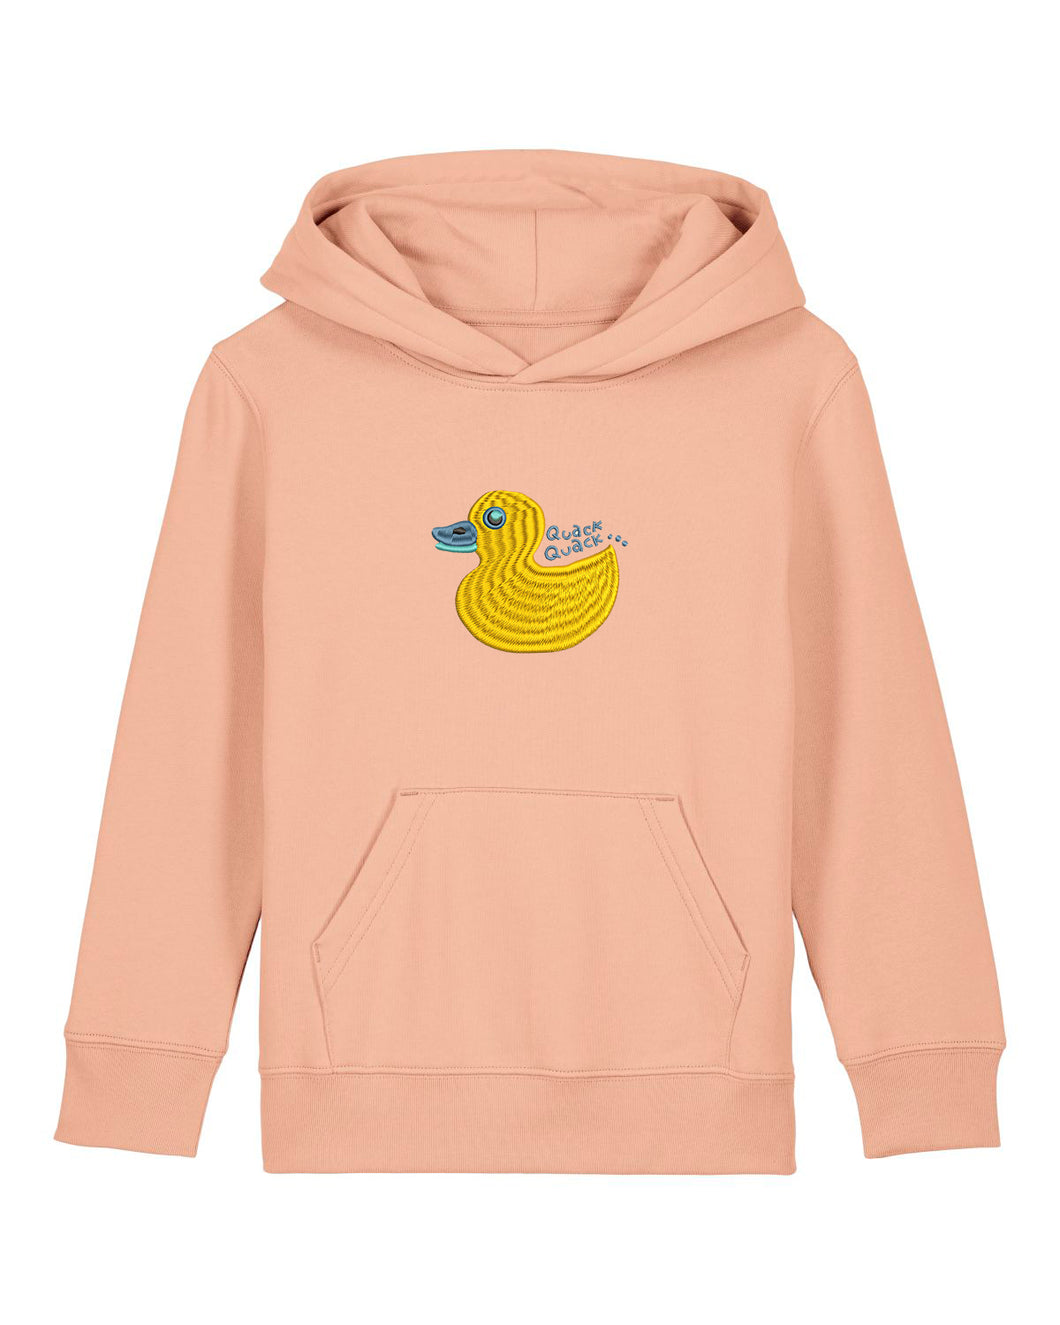 Quack, Quack 🦆- Embroidered UNISEX KIDS hoodie